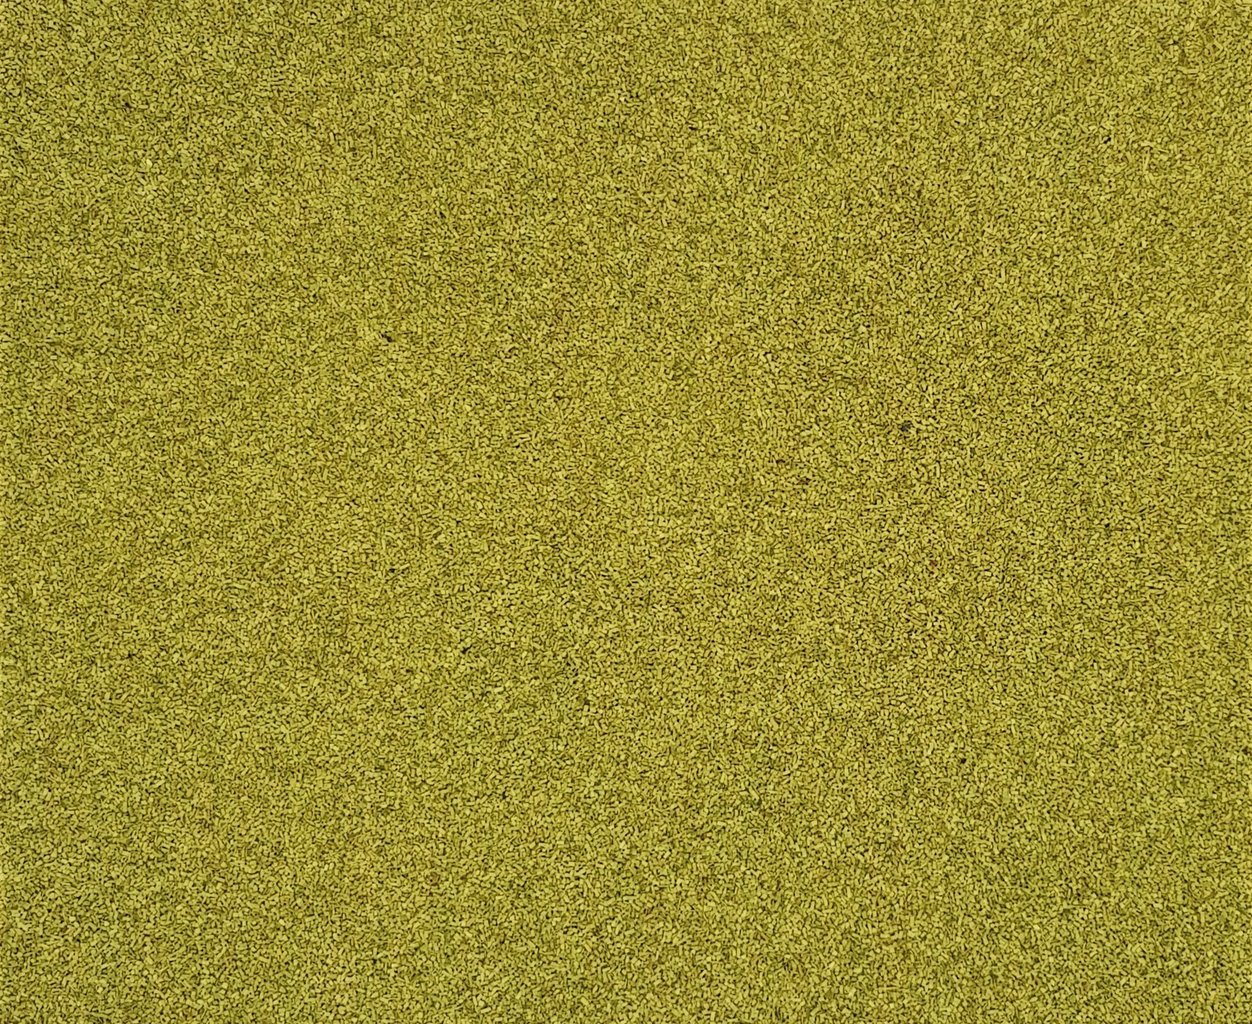 LA-GRMSU-1 SELF ADHESIVE MAT SUMMER GREEN 300mm x 1000mm